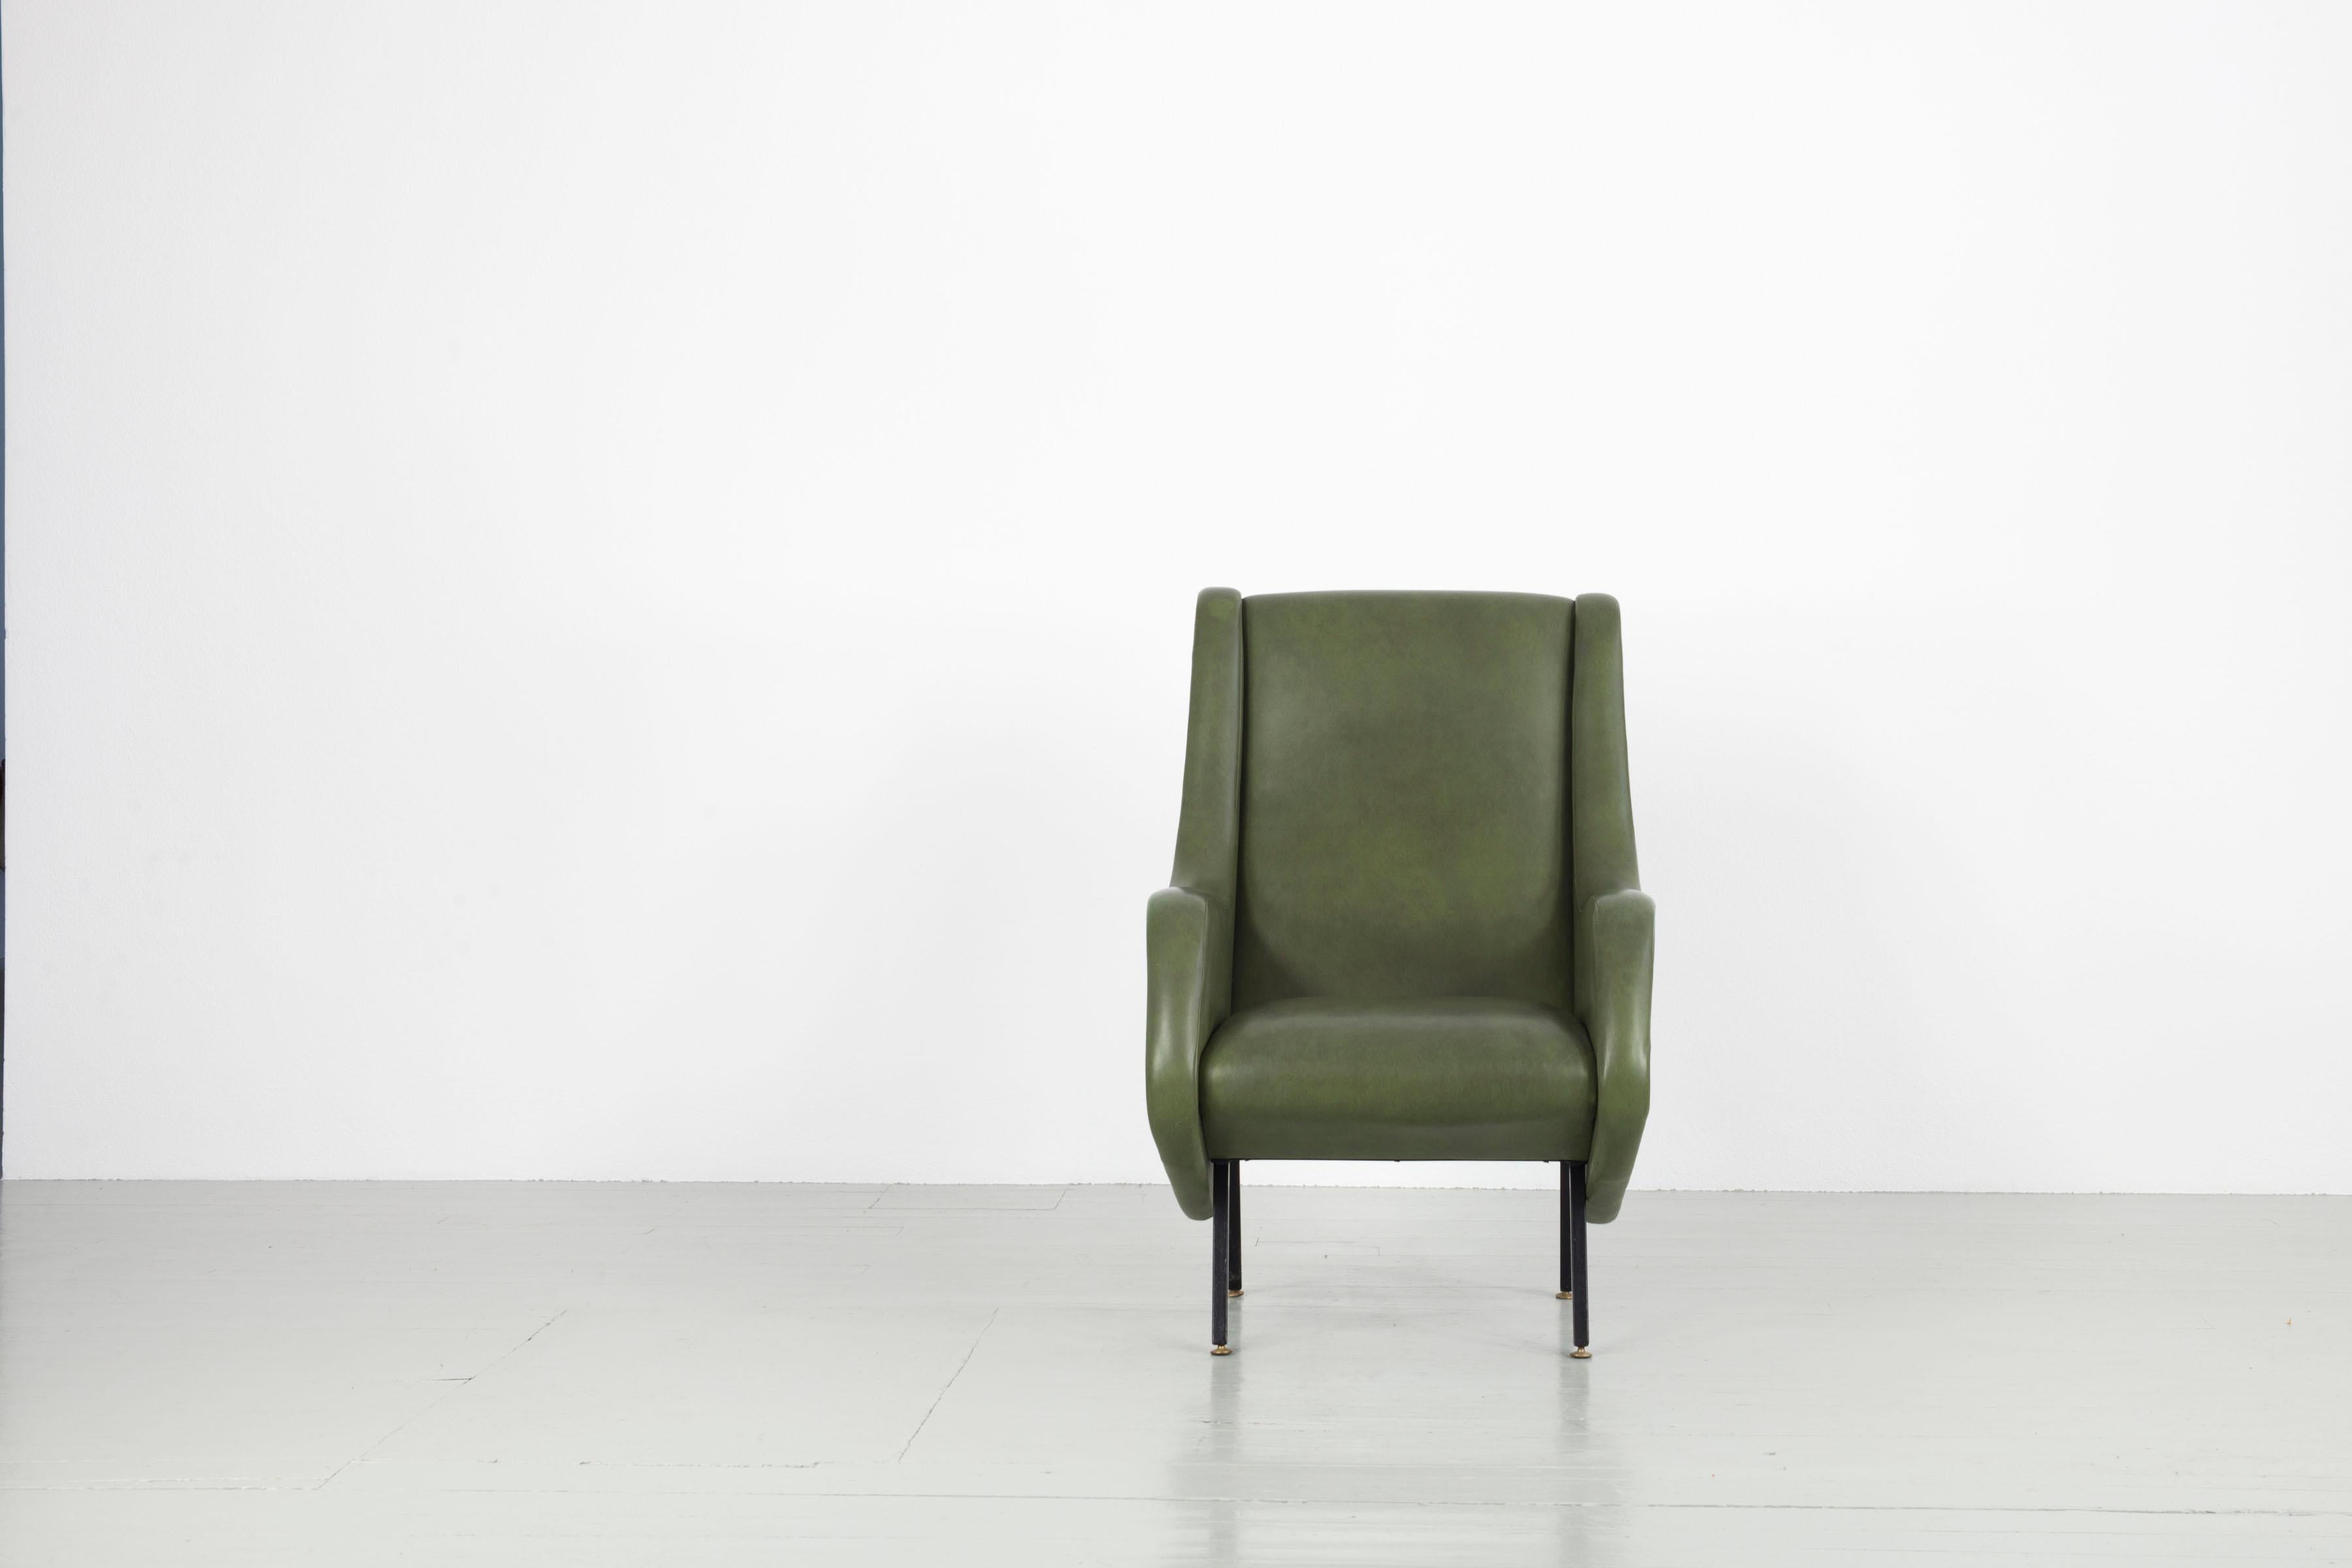 Dieser Sessel im Stil von Aldo Morbelli wurde in den 1950er Jahren in Italien hergestellt. Der Sessel mit Armlehnen hat einen grünen Kunstlederbezug und Eisenbeine mit Messingknäufen. Das Möbelstück ist in perfektem Zustand.

Zögern Sie nicht, uns